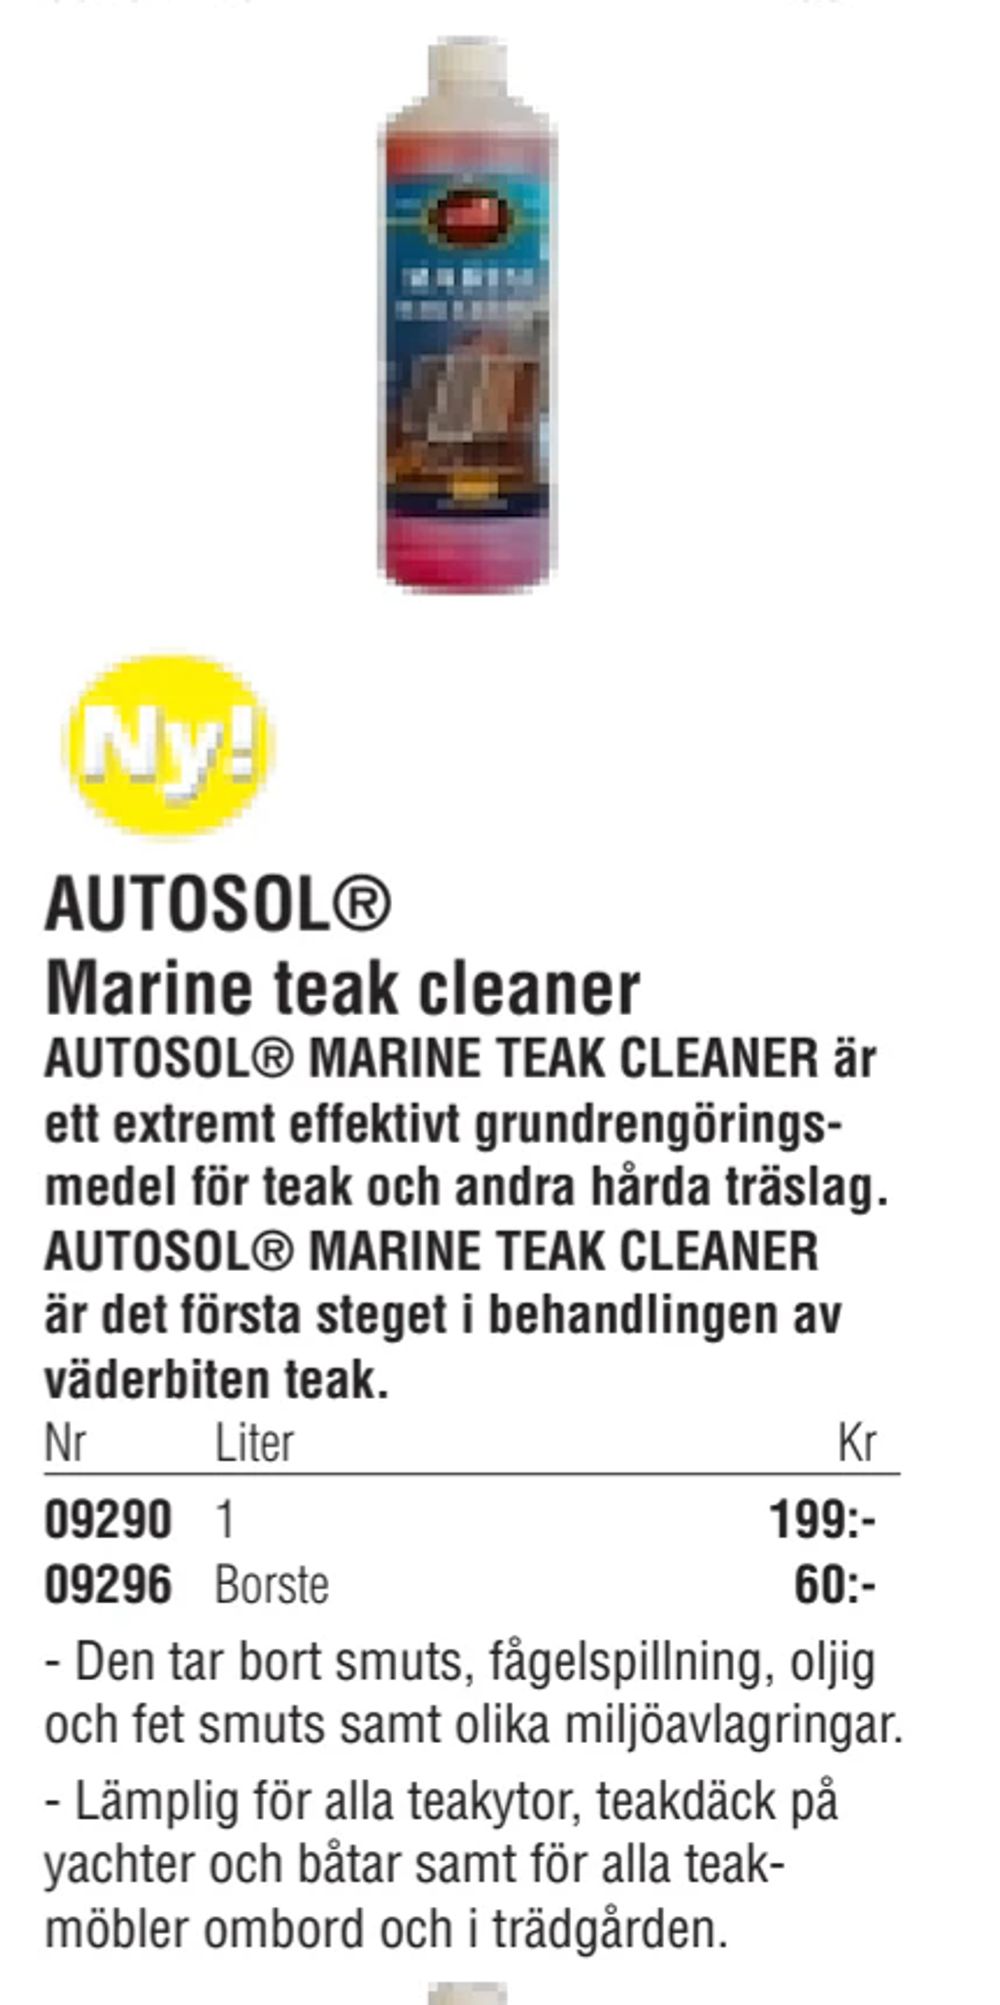 Erbjudanden på AUTOSOL® Marine teak cleaner från Erlandsons Brygga för 60 kr